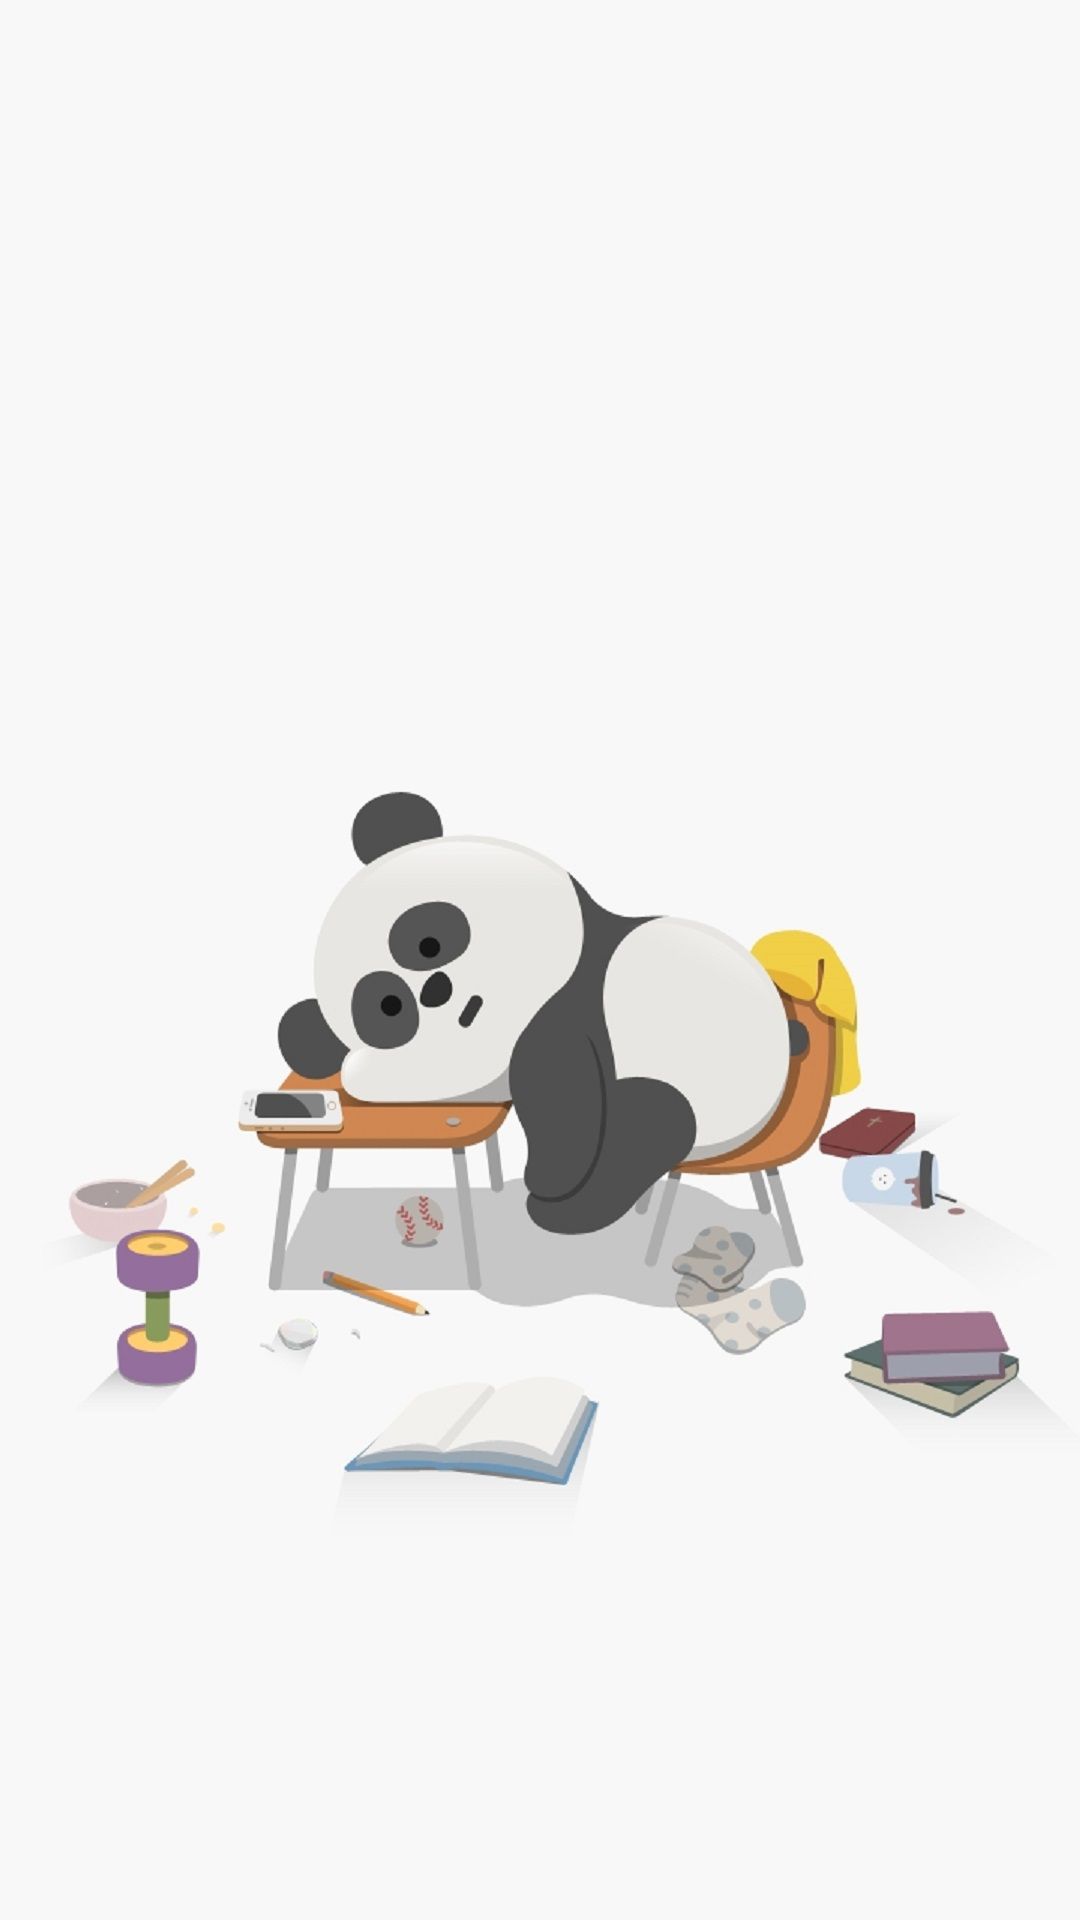 8 Hình nền gấu panda ideas  cute panda wallpaper panda wallpapers cute  cartoon wallpapers